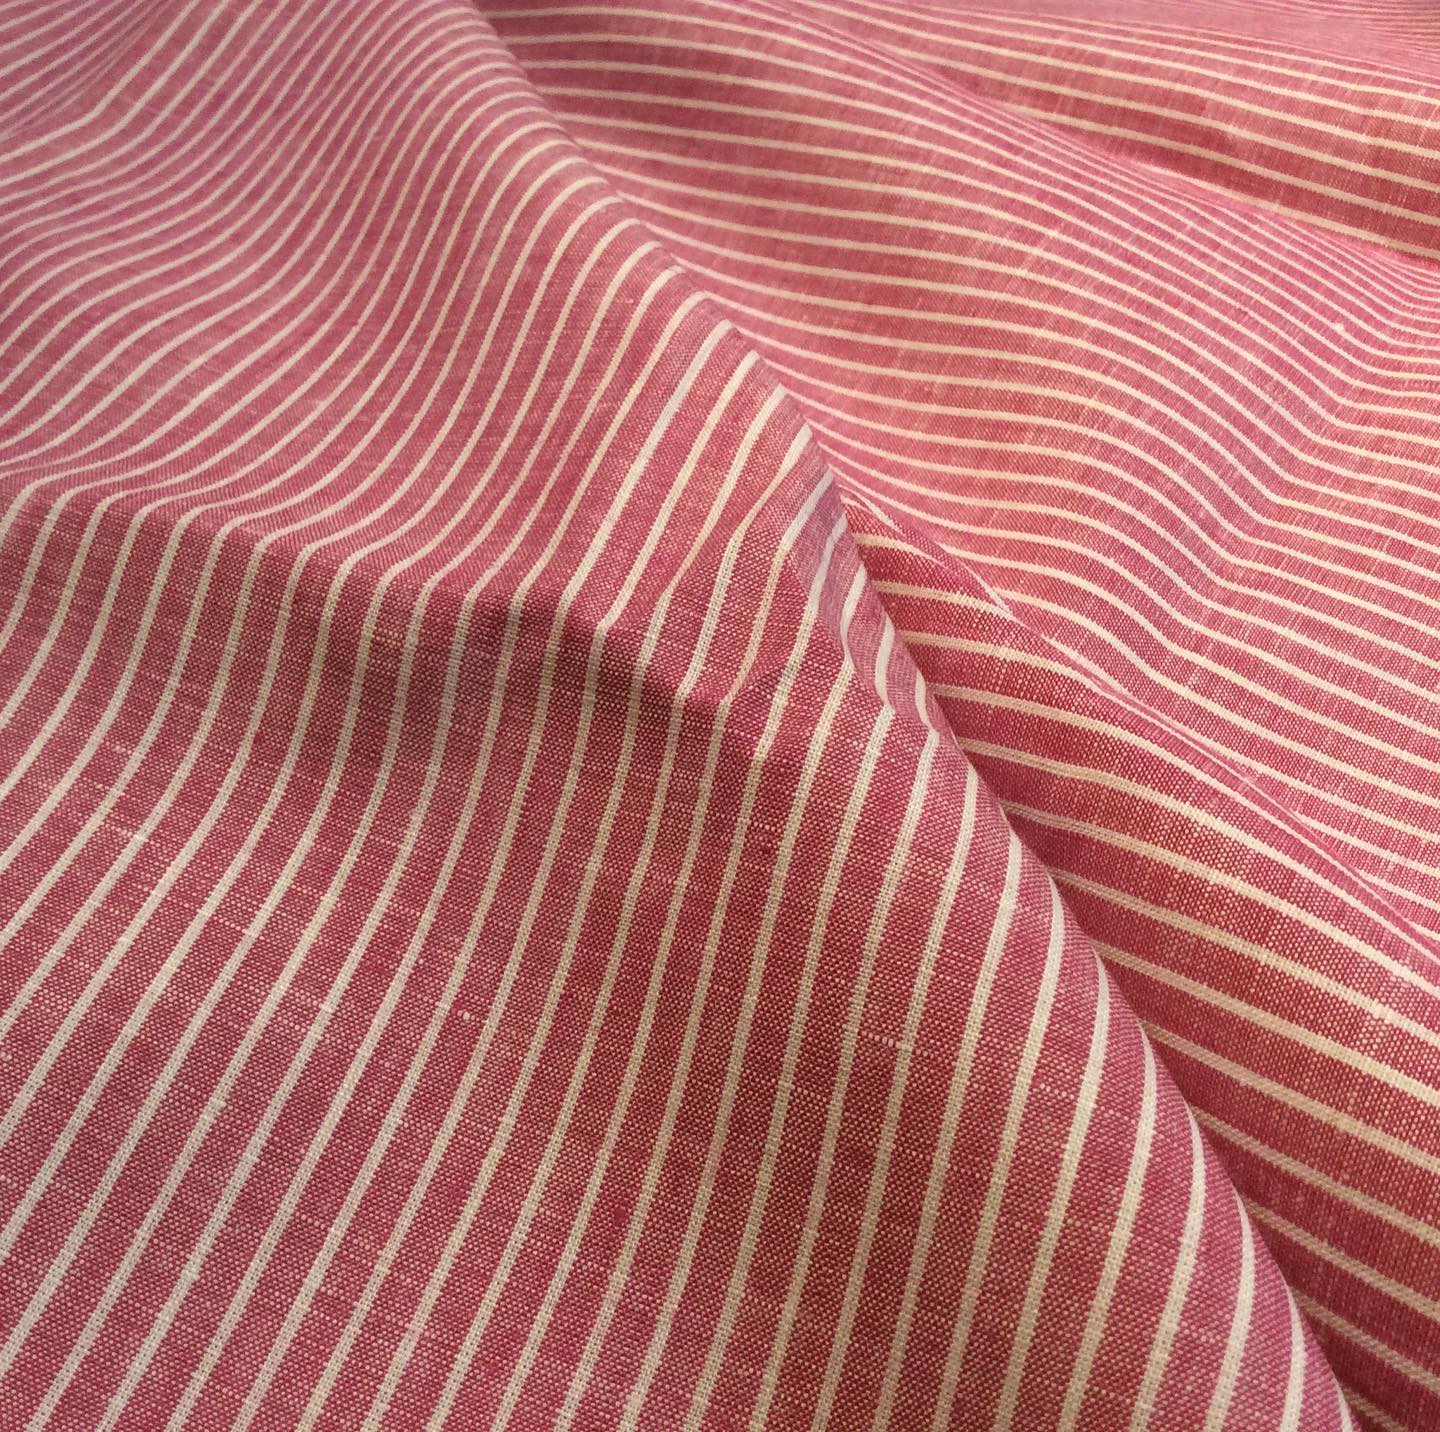 09 Coral Linen från Acorn Fabrics ett kvalitativt linnetyg från England. En skjorta, klänning, byxor? Välkommen att bekanta dig med kvalitet och olika design för kommande säsong. Din Skräddare i Helsingborg.